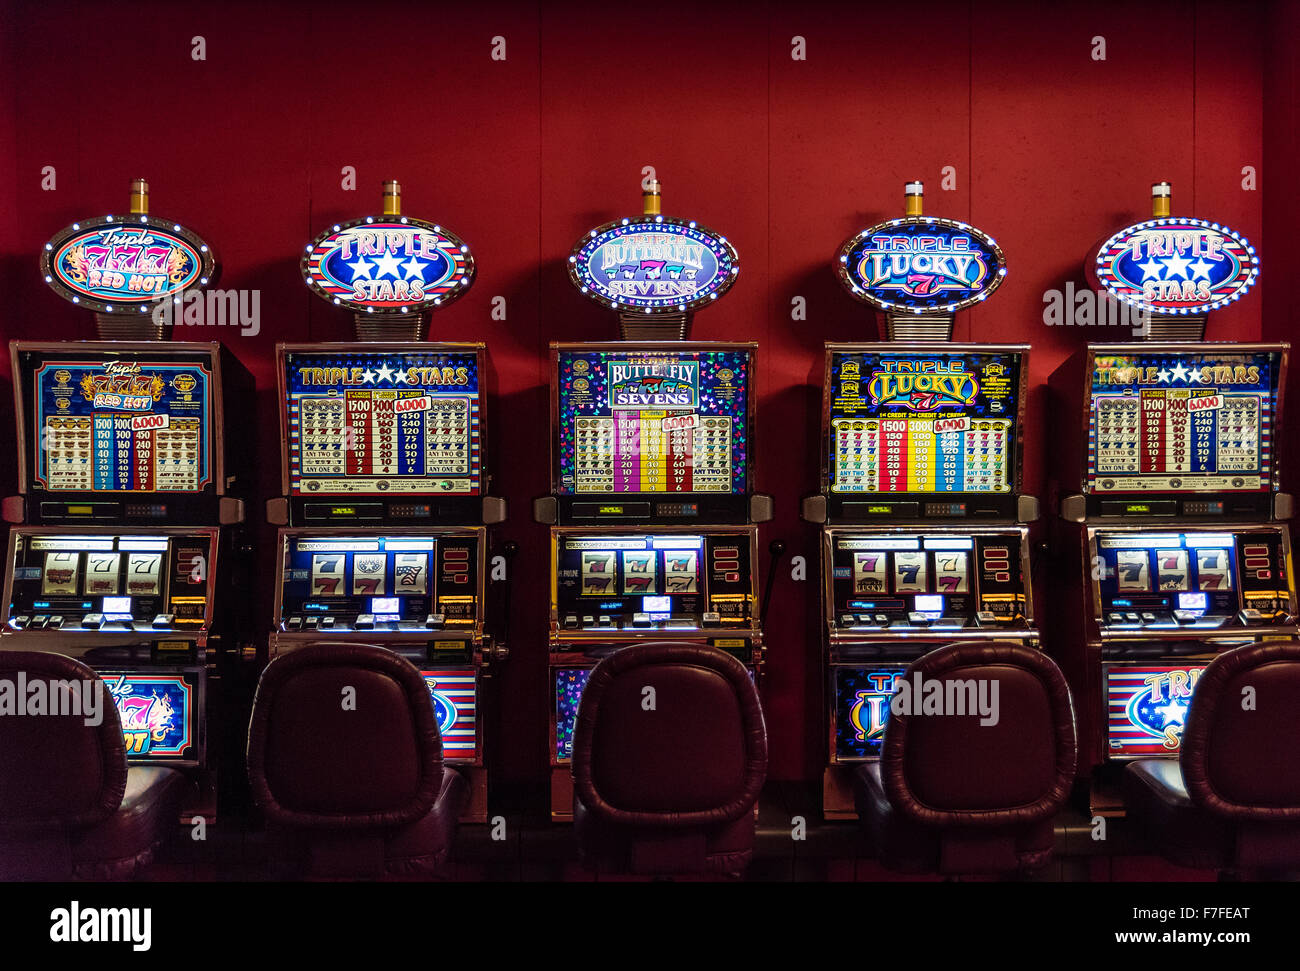 Casino slot machines. Stock Photo